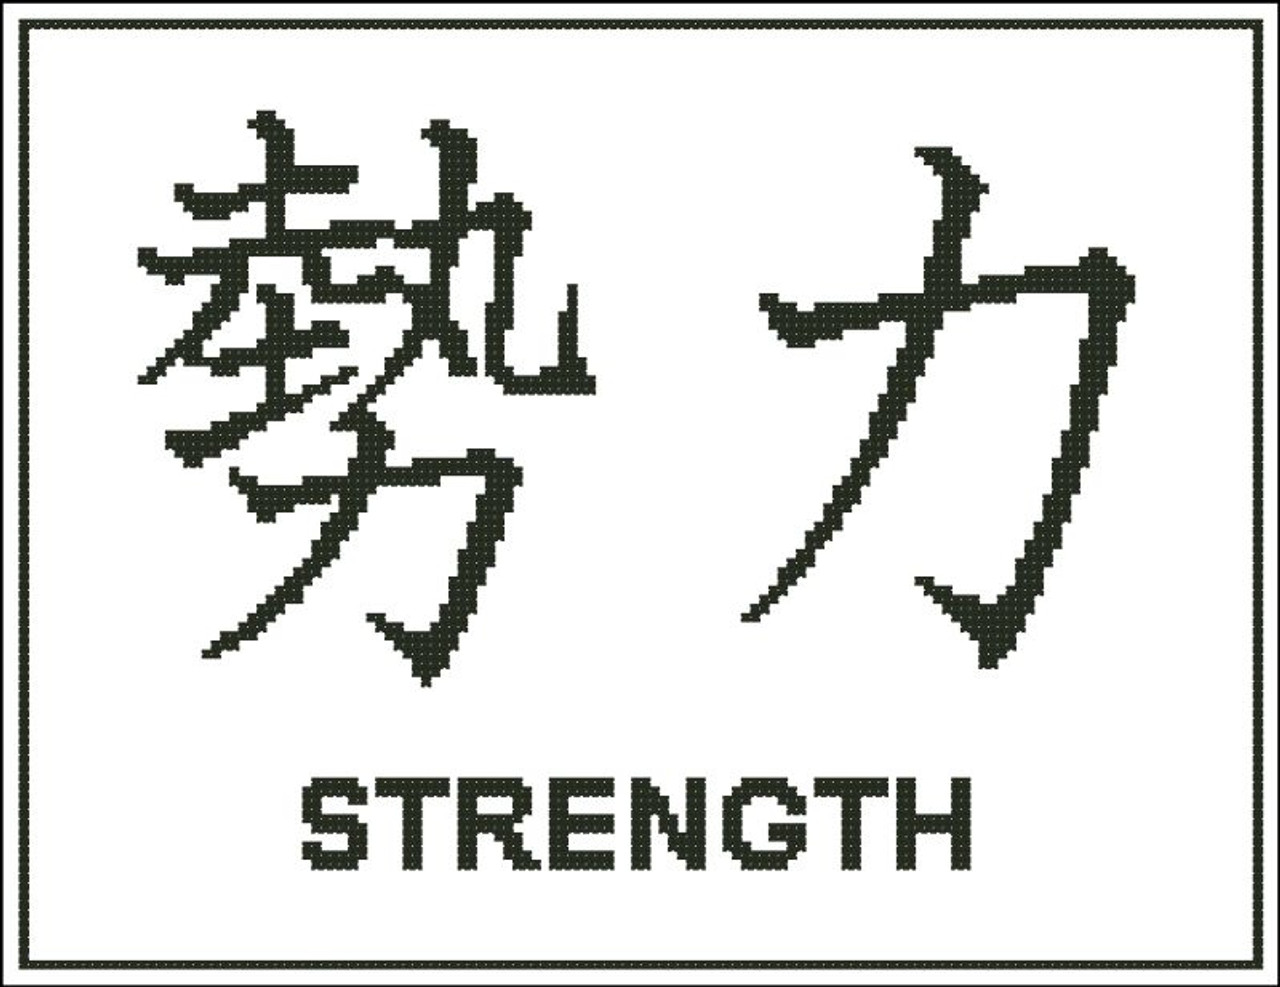 japanese symbol for power